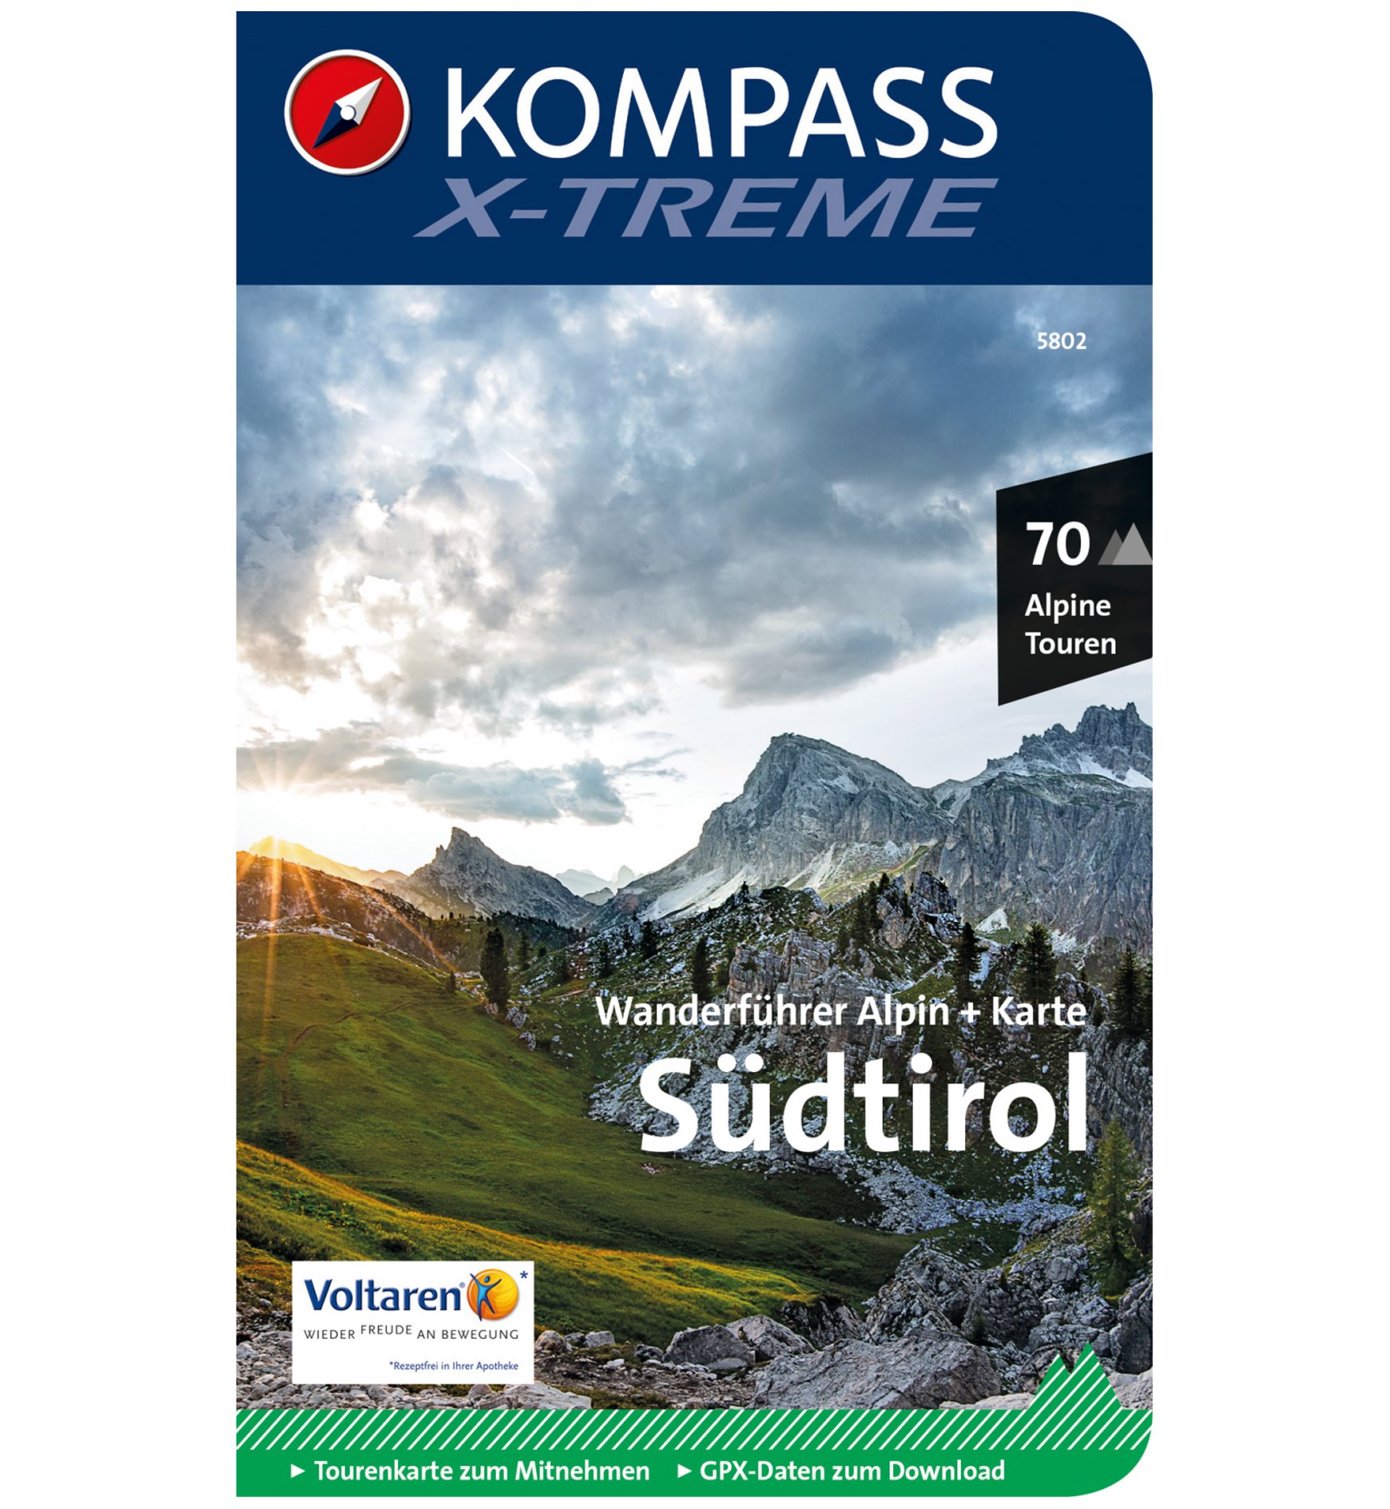 Kompass Karte Nr.5802: Südtirol X-Treme | Sportler.com